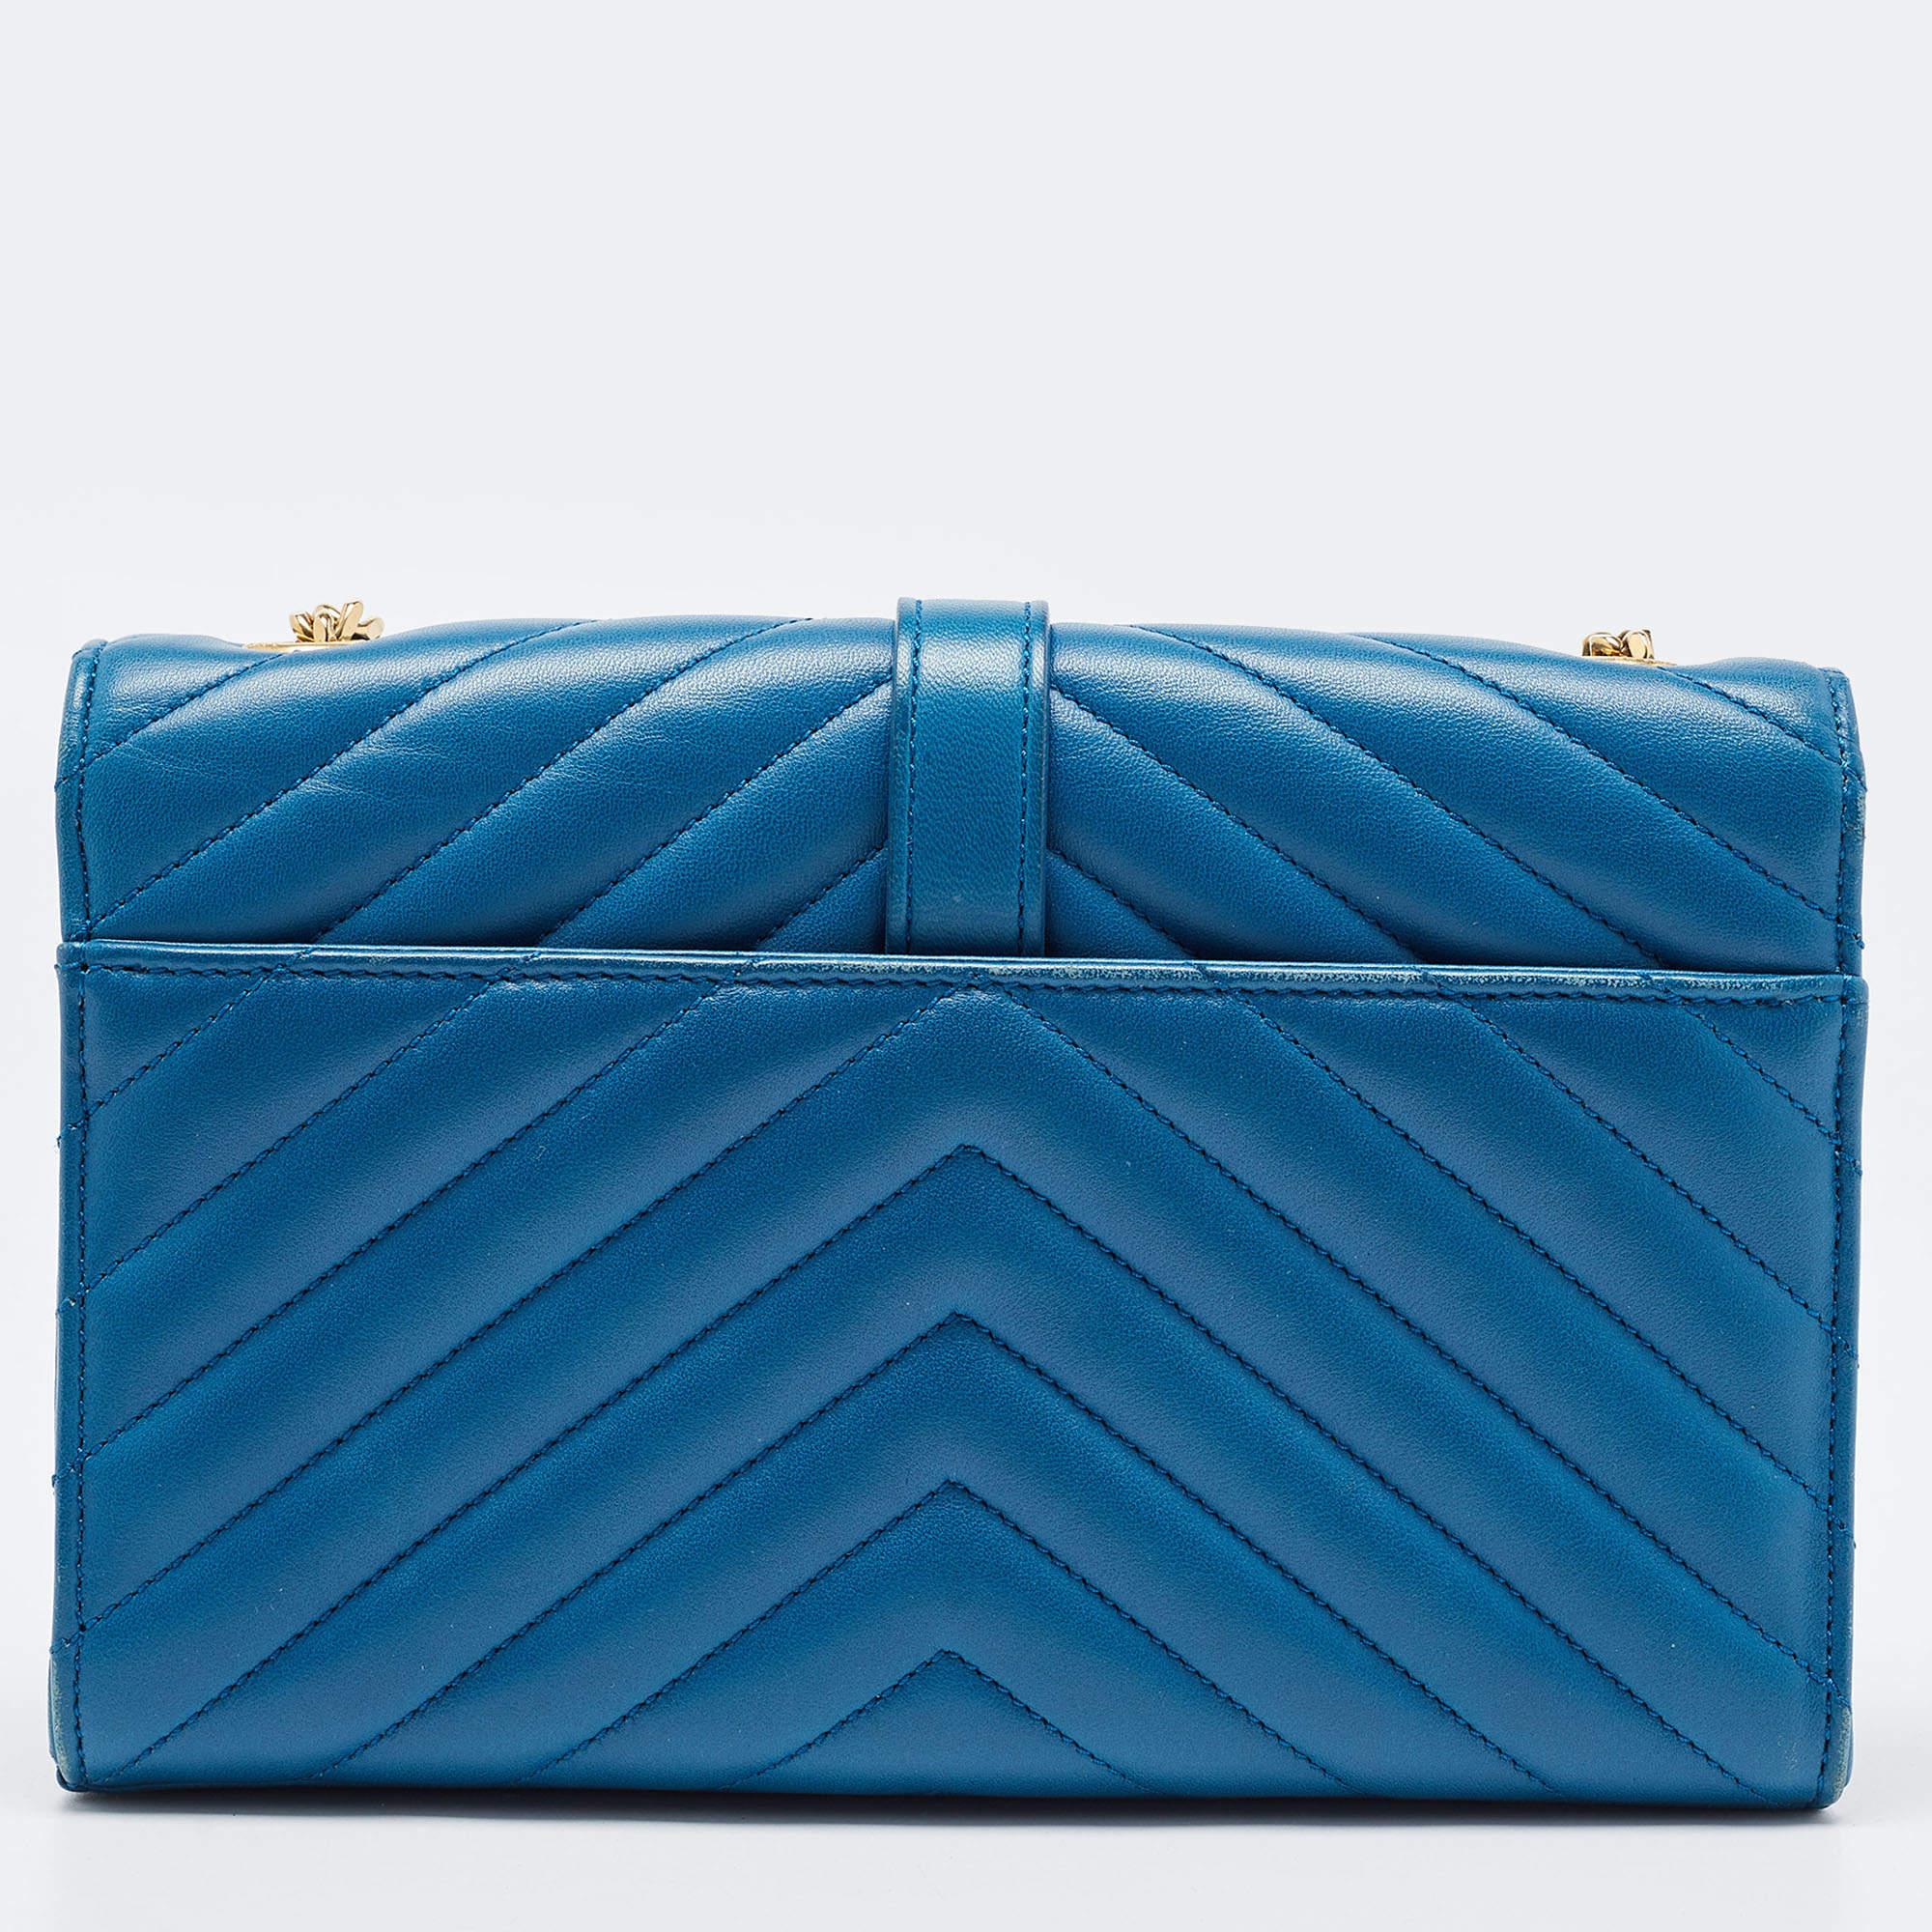 Women's Saint Laurent Blue Matelasse Leather Envelope Chain Shoulder Bag